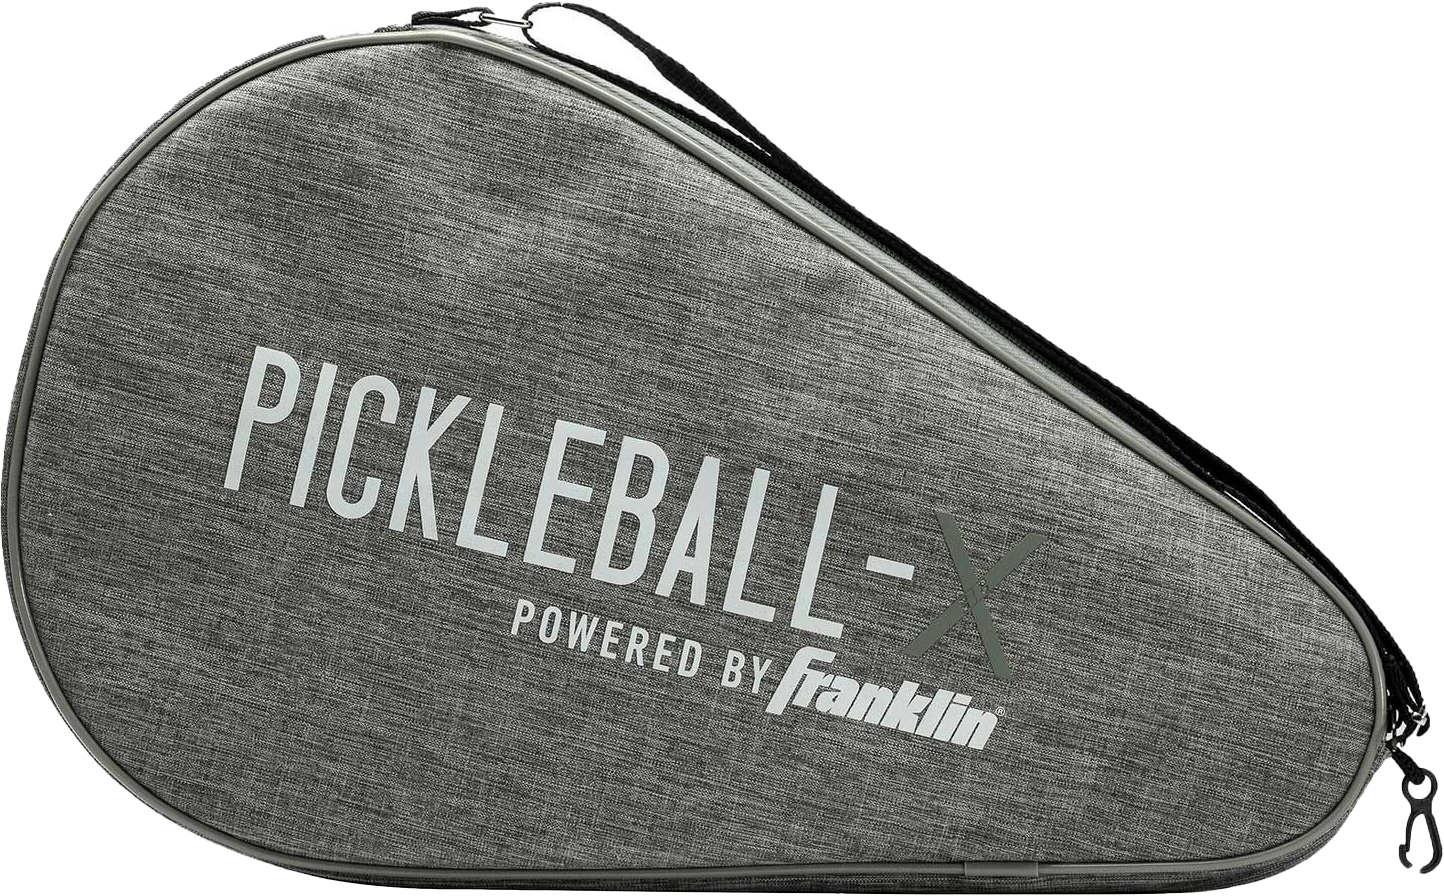 Franklin Pickleball Paddle Bag Pickleball Bag Gray